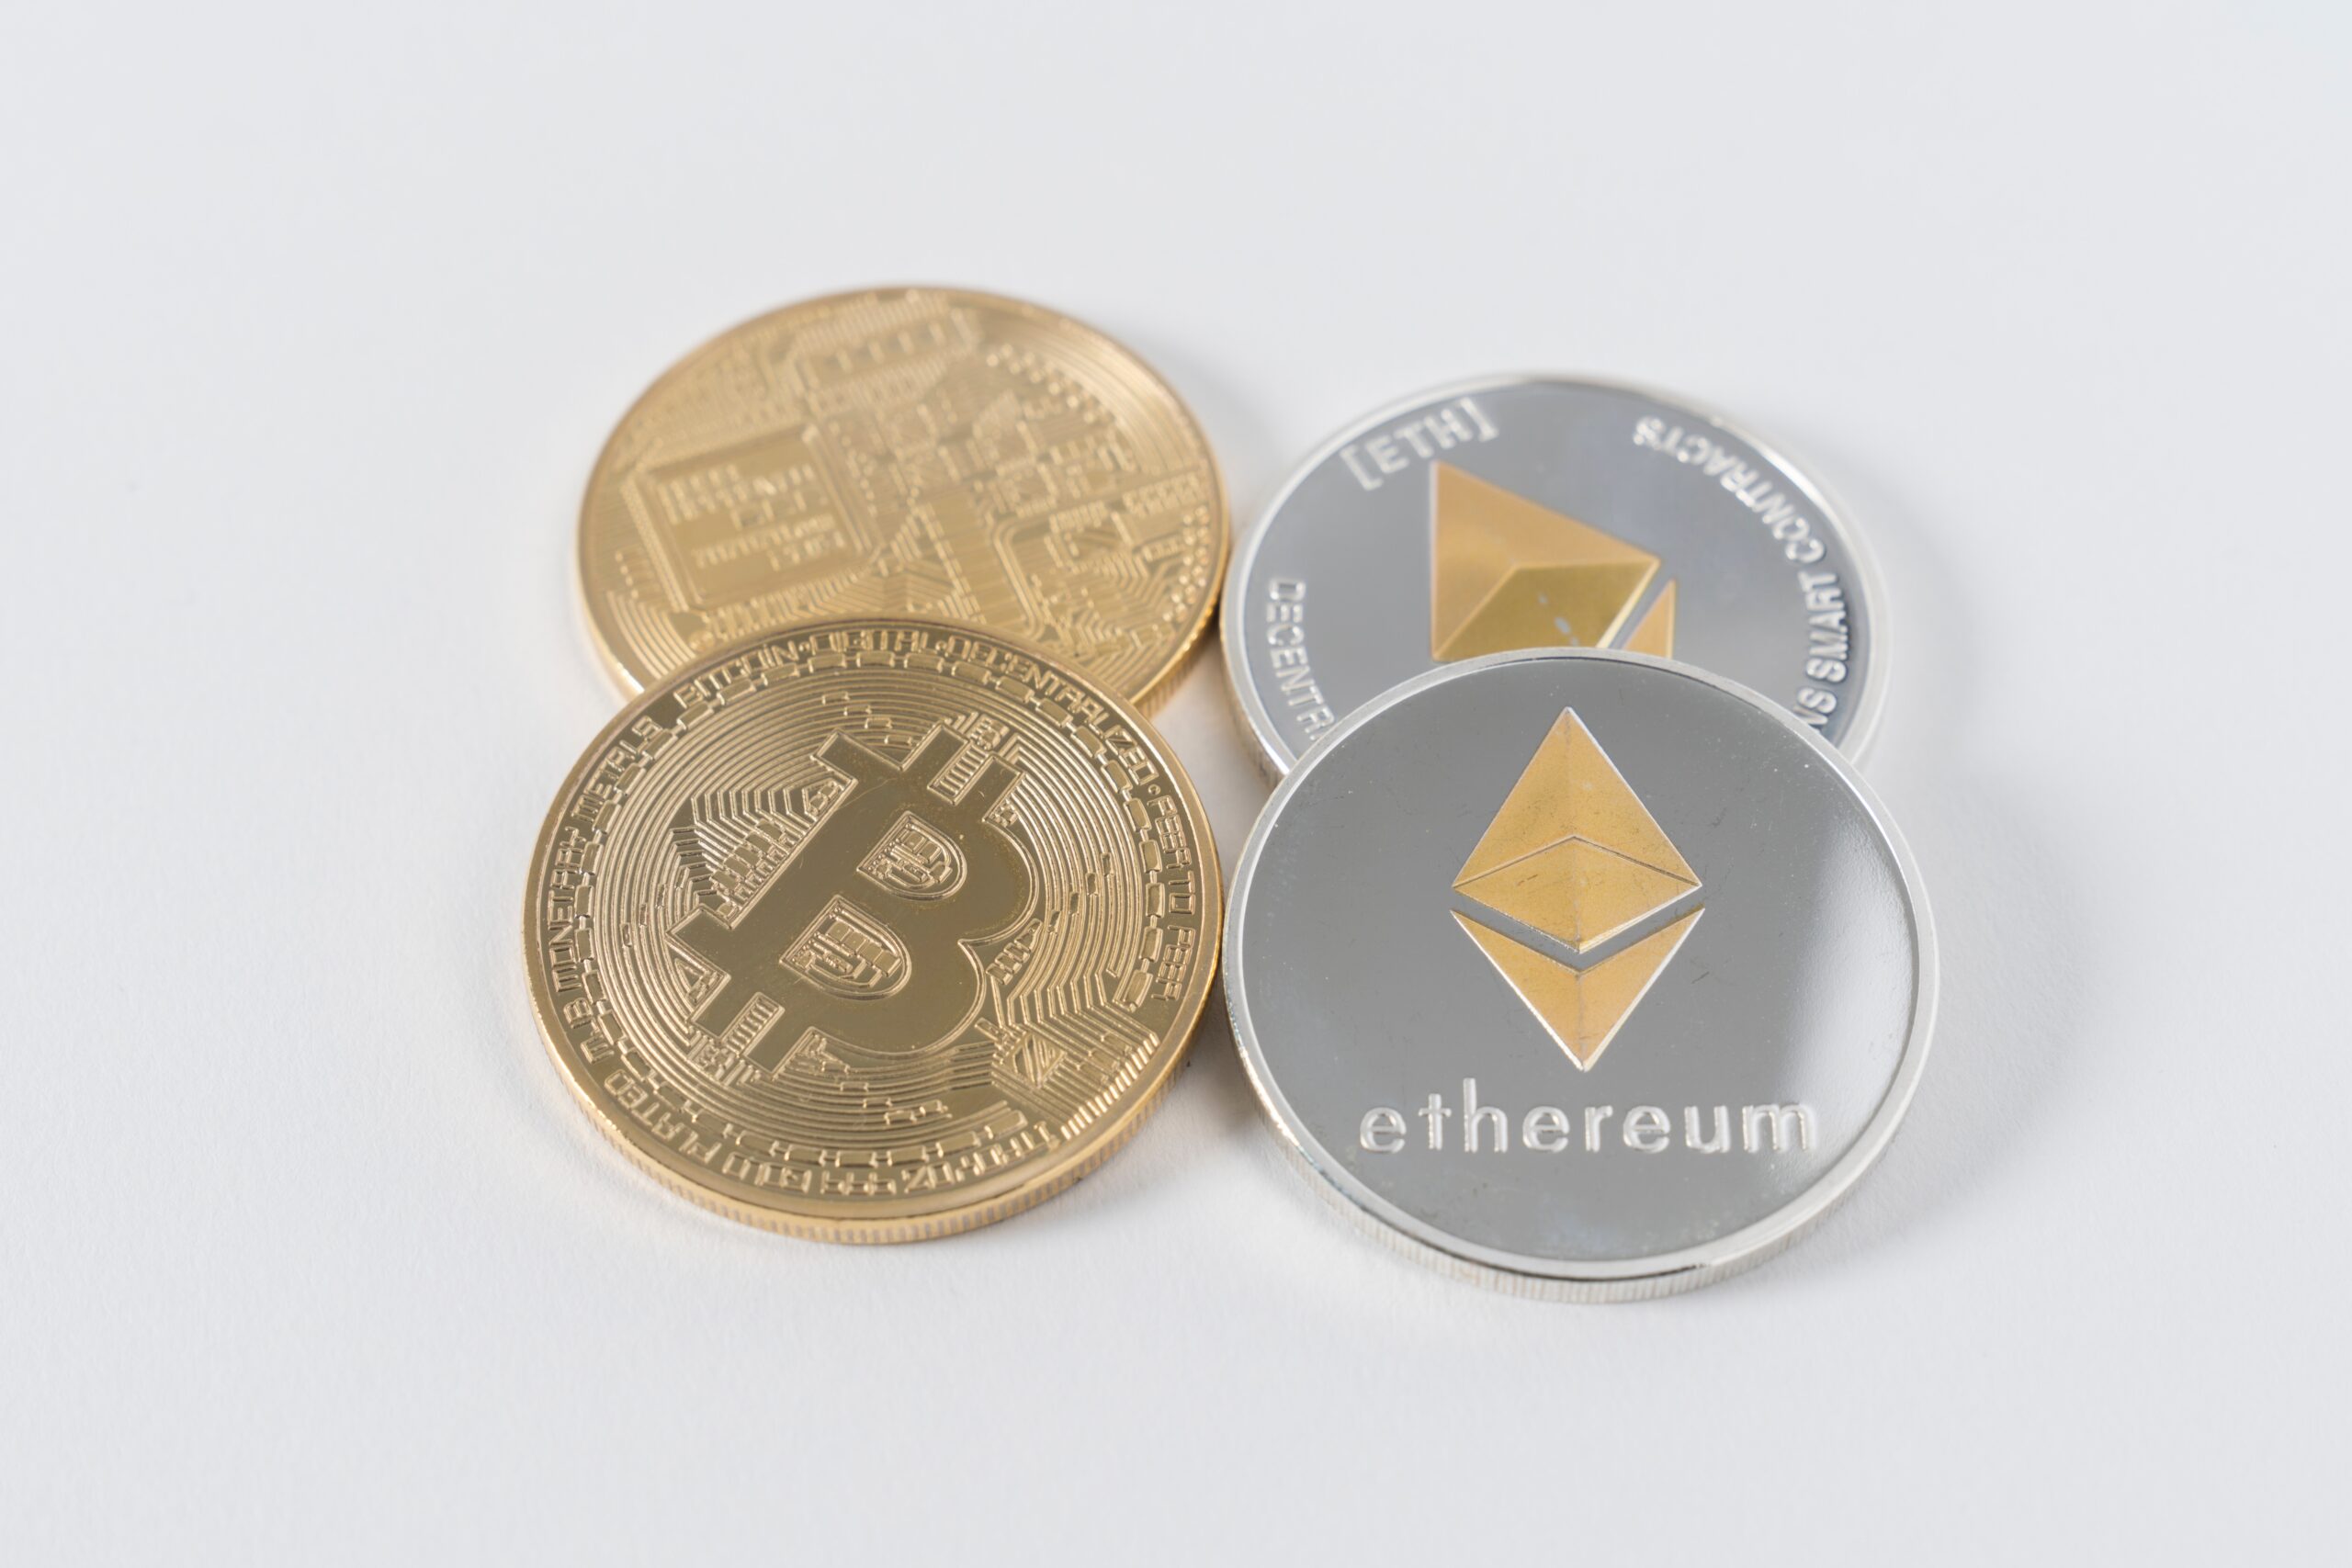 An image of a Bitcoin coin next to an Ethereum coin